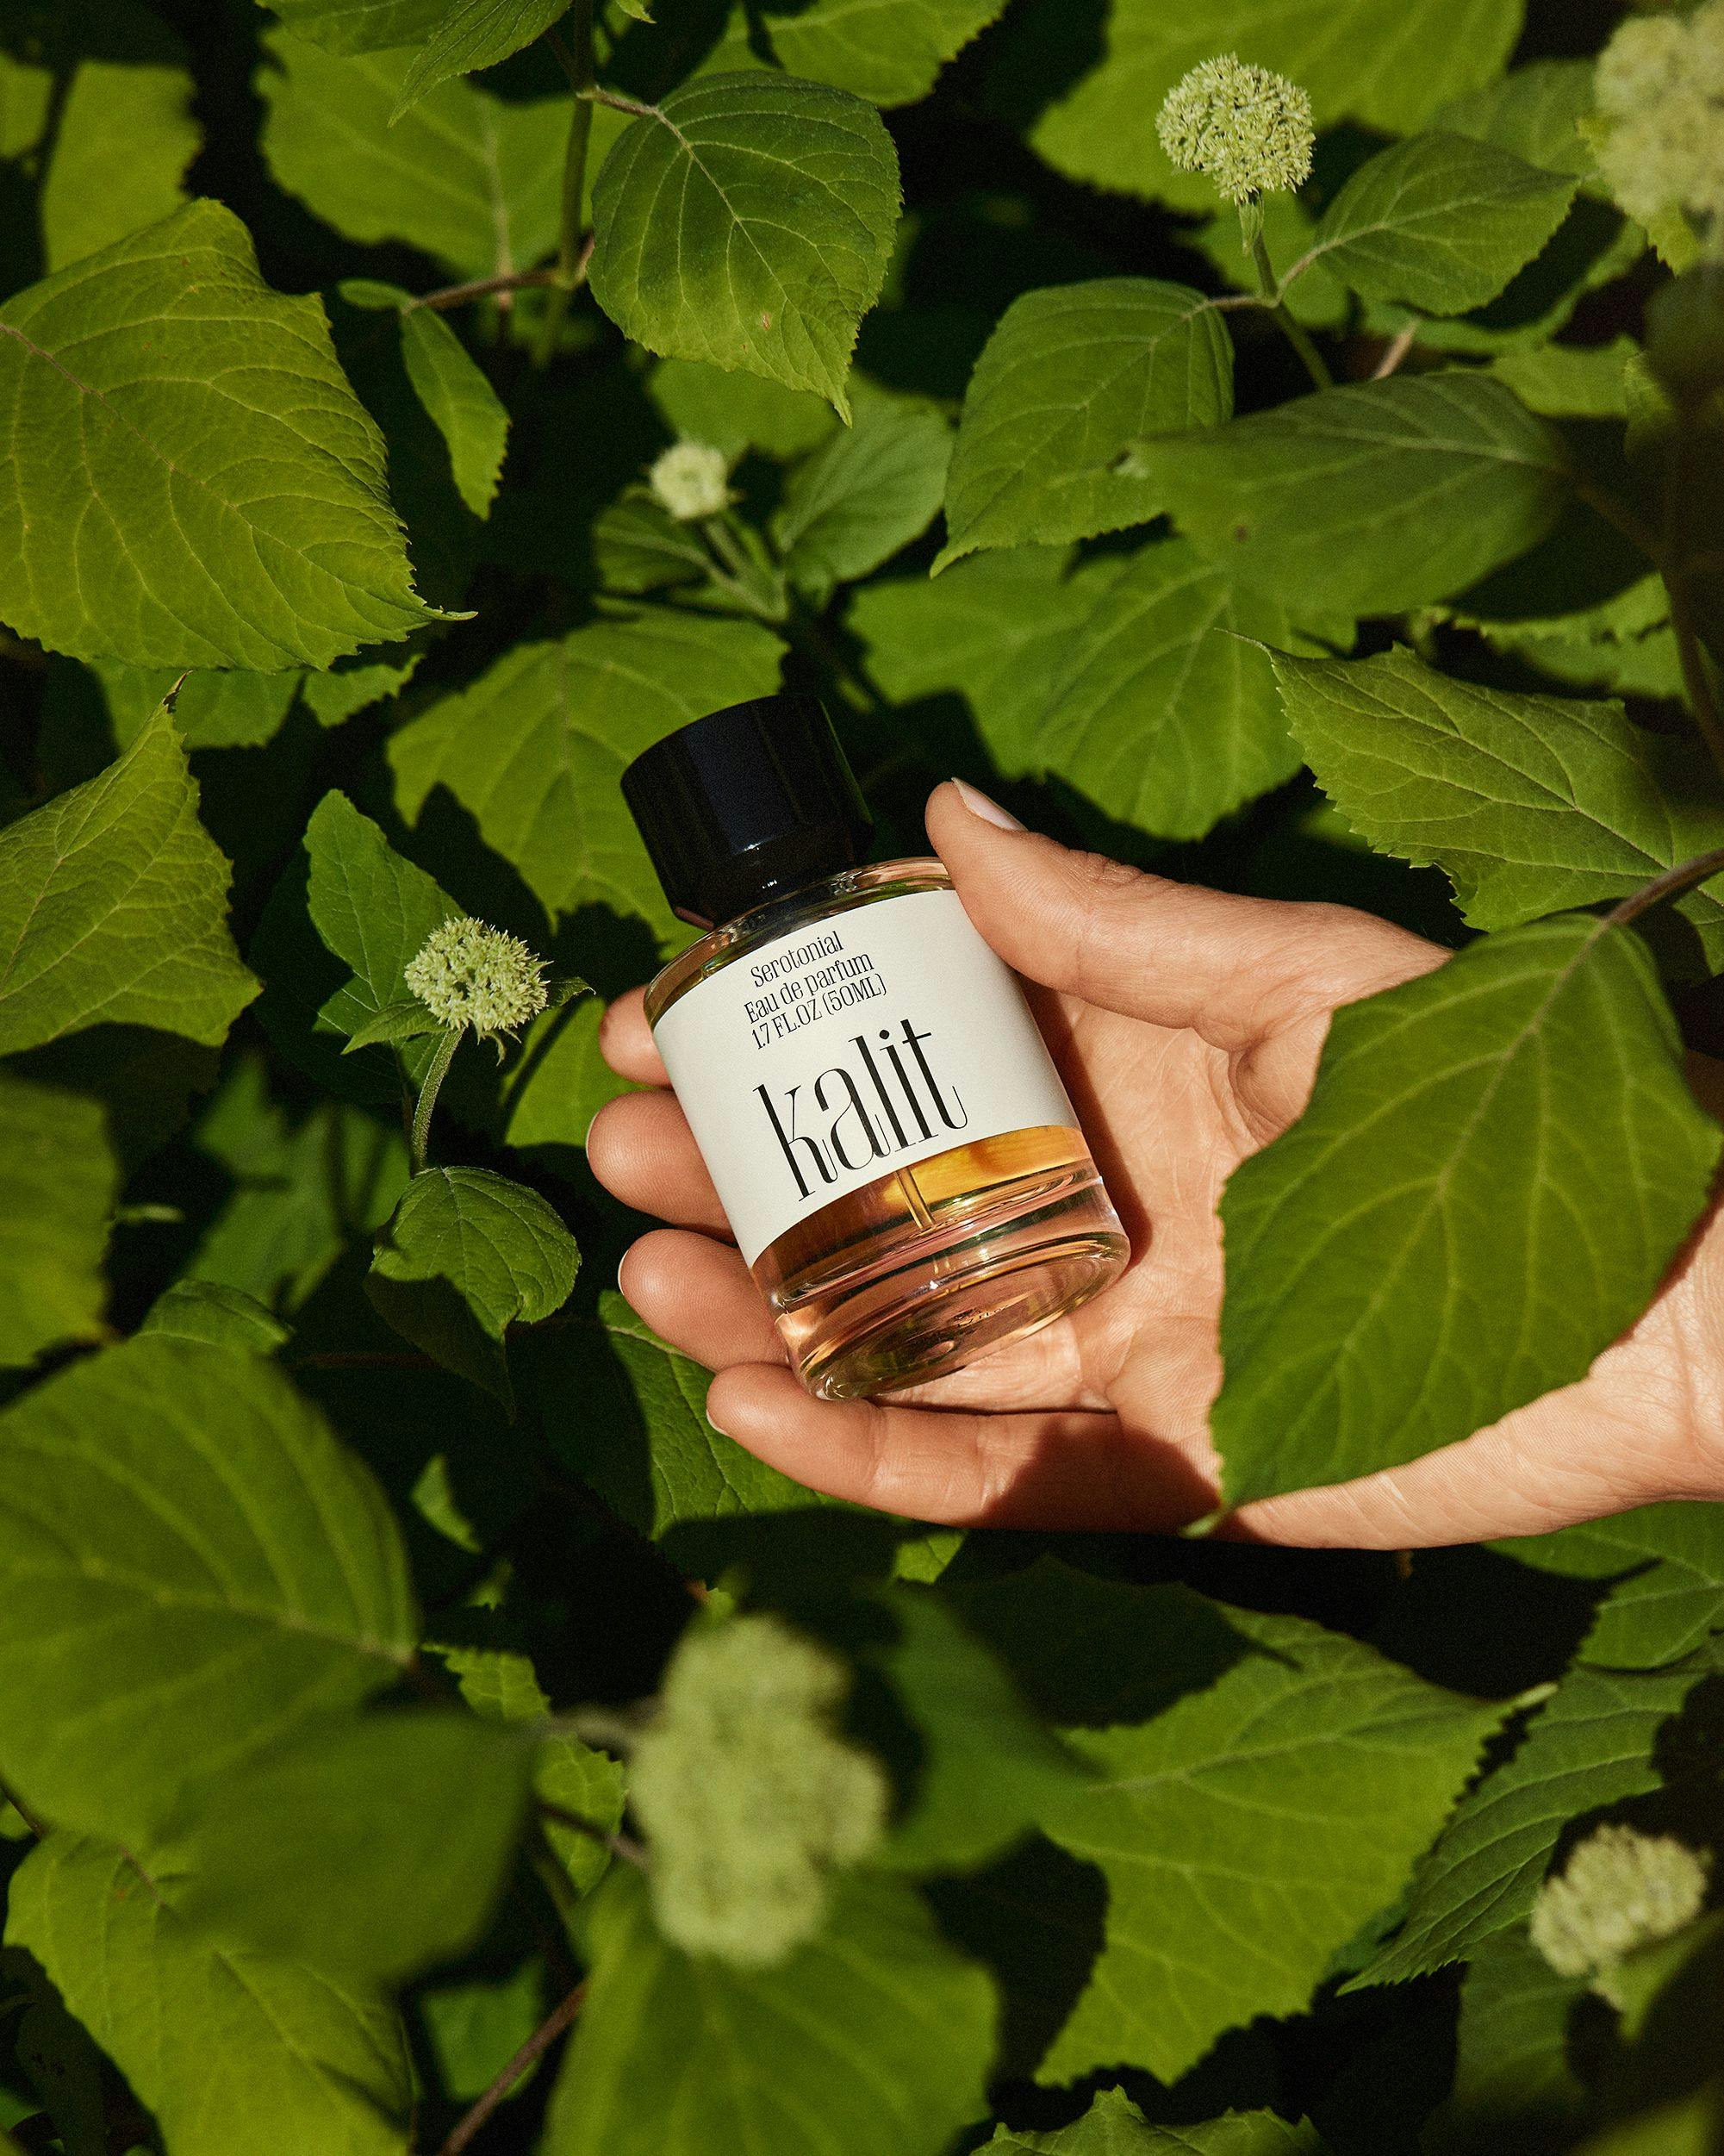 Bottle of perfume by Kalit, Serotonial